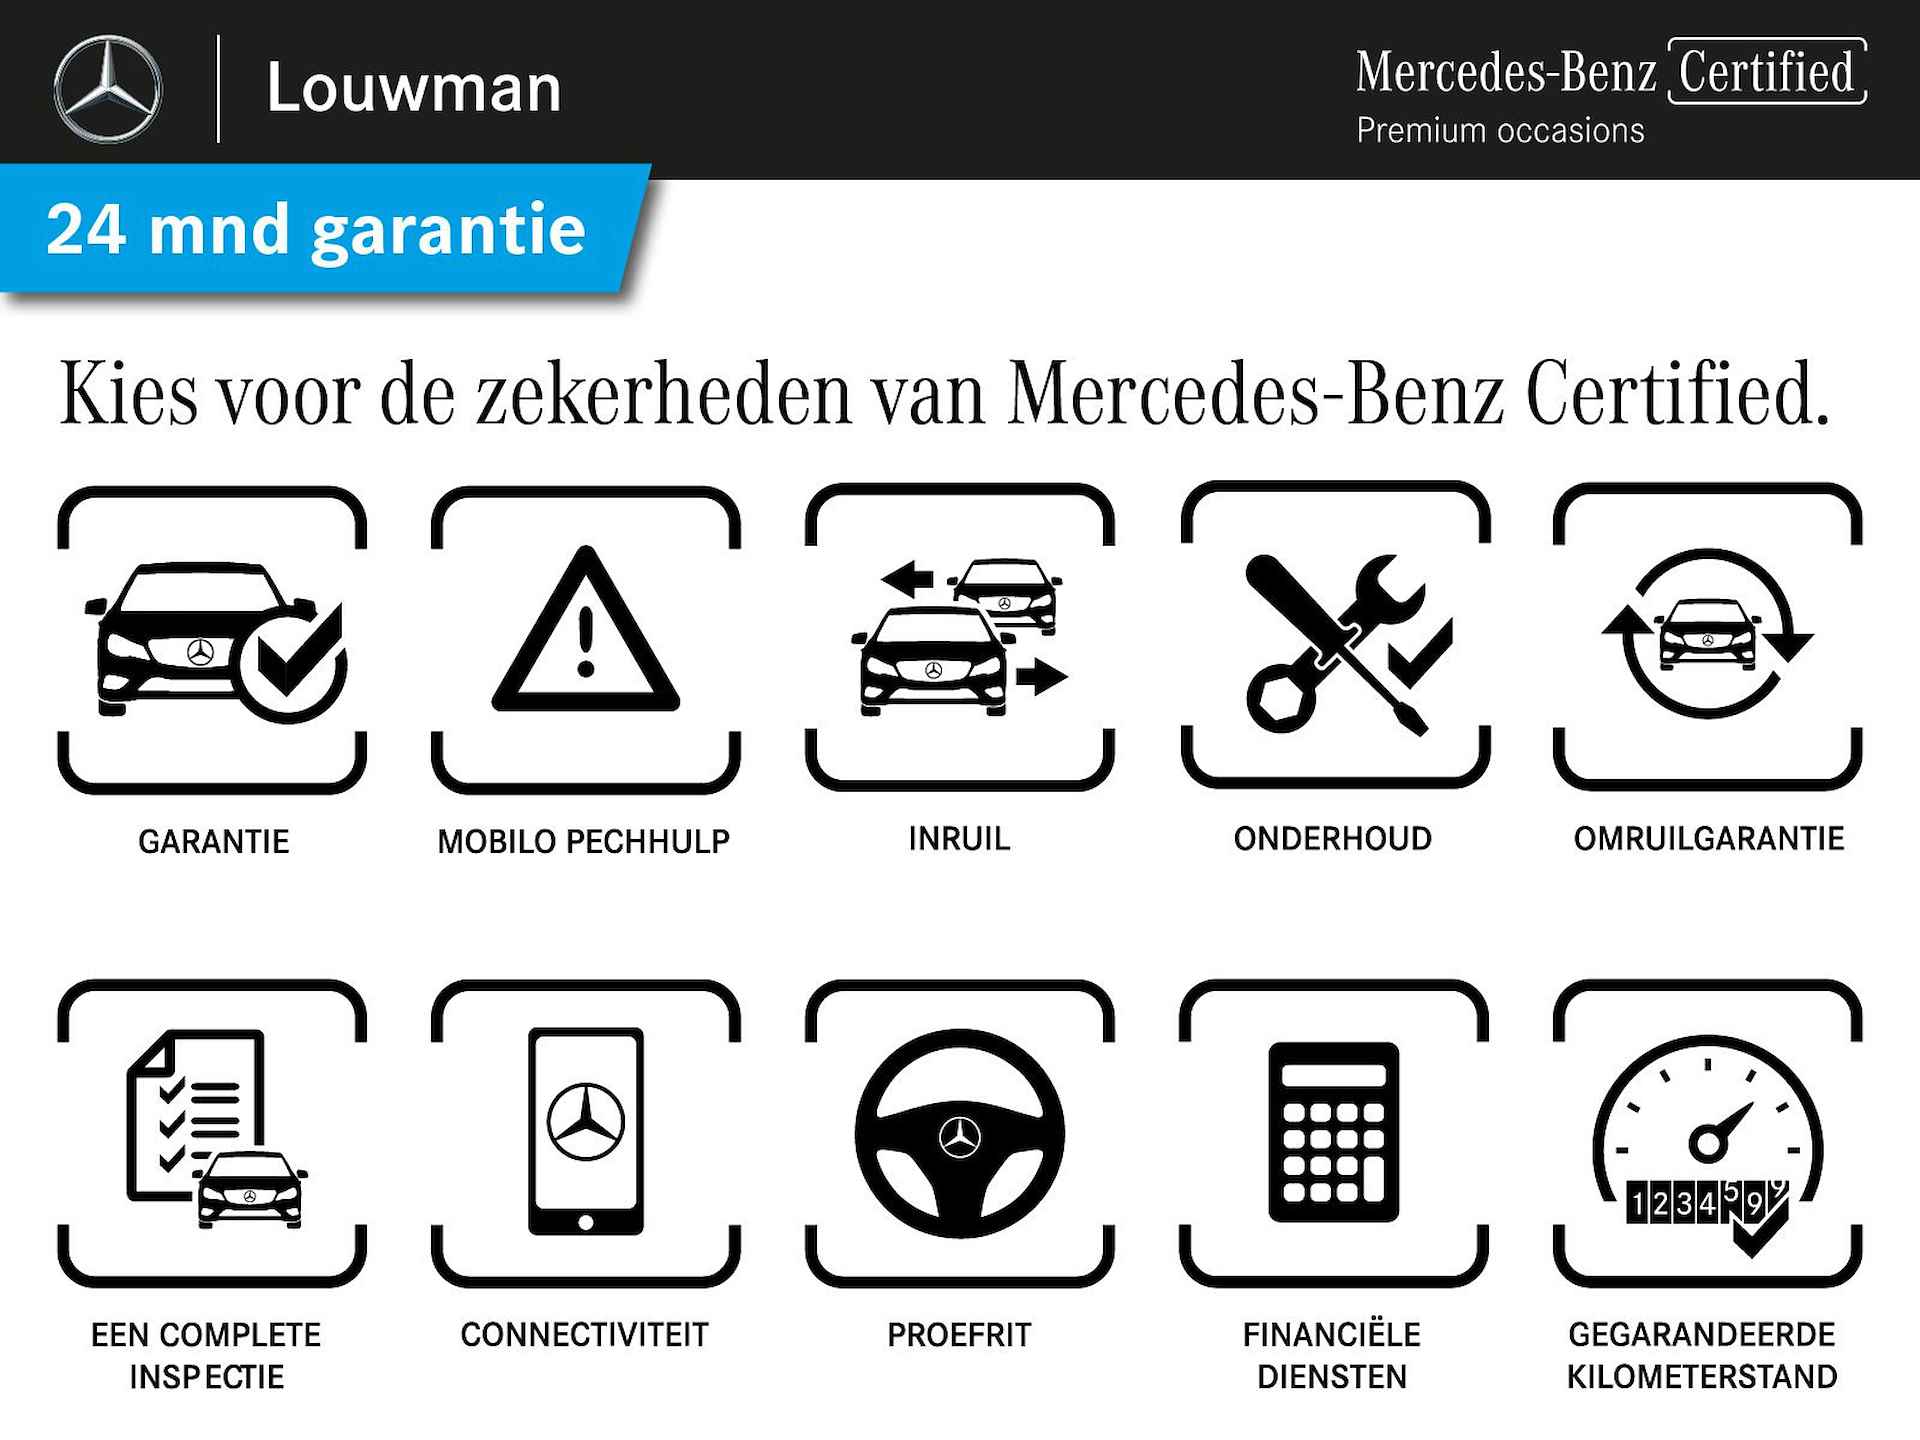 Mercedes-Benz C-Klasse 180 Business Solution AMG | 5 spaaks lichtmetalen velgen | Navigatie | Panoramadak | AMG Styling | Achteruitrijcamera | LED Koplampen | Inclusief 24 maanden MB Certified garantie voor europa. - 50/50